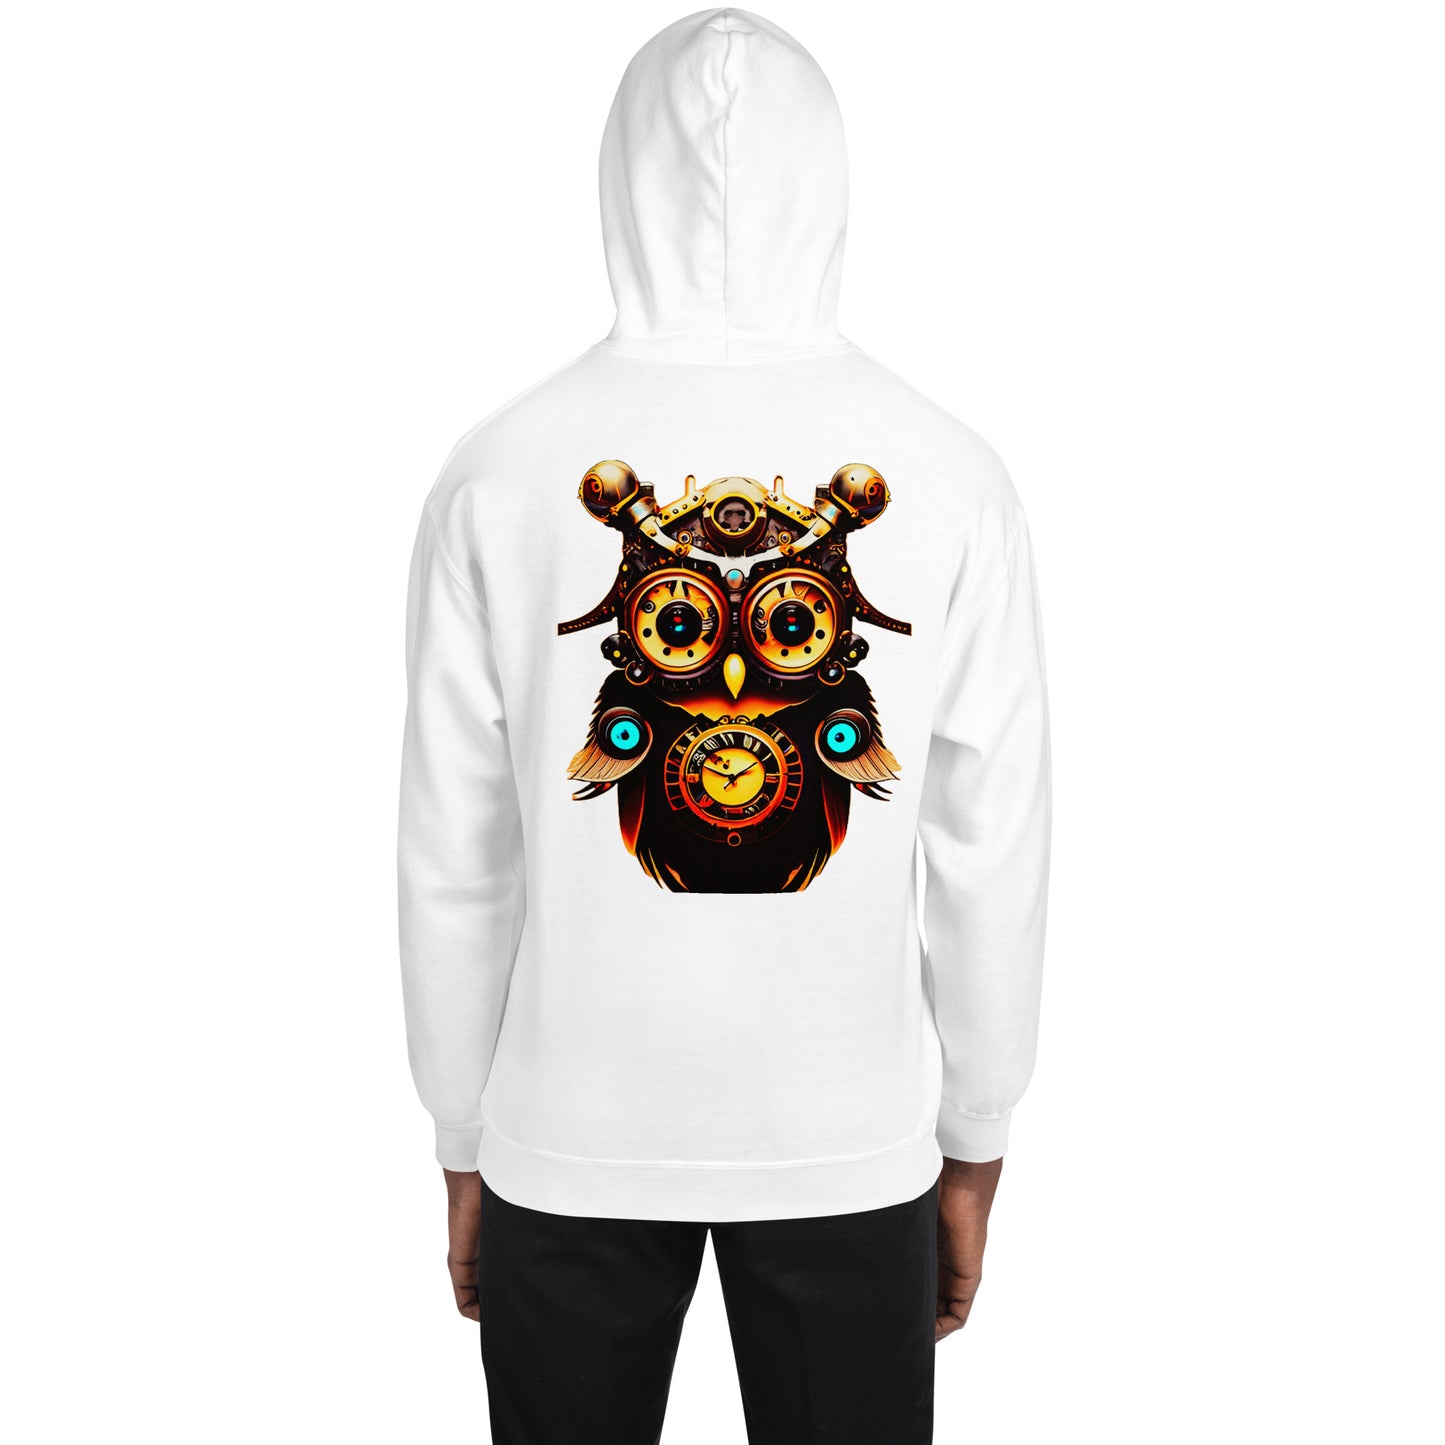 "Steampunk owl" men's hoodie